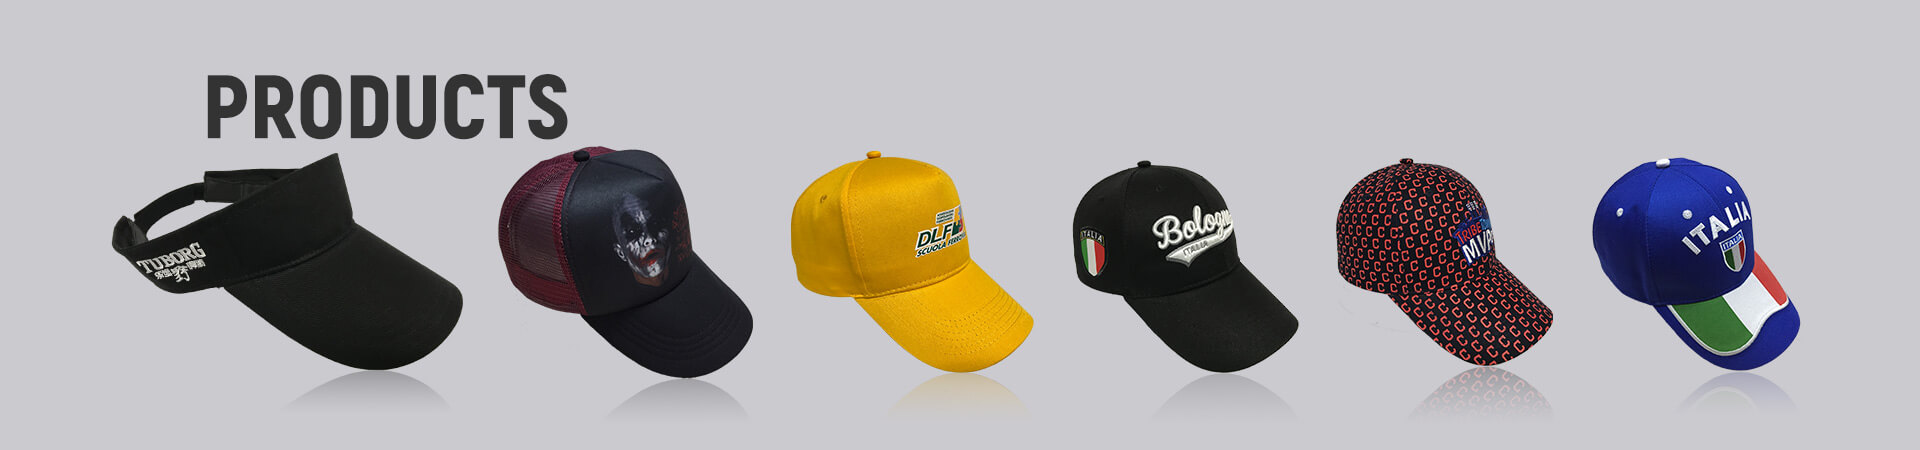 baseball Cap Archives - Gorra de béisbol, gorra deportiva, gorra de golf, gorra de pescador, gorra de camionero